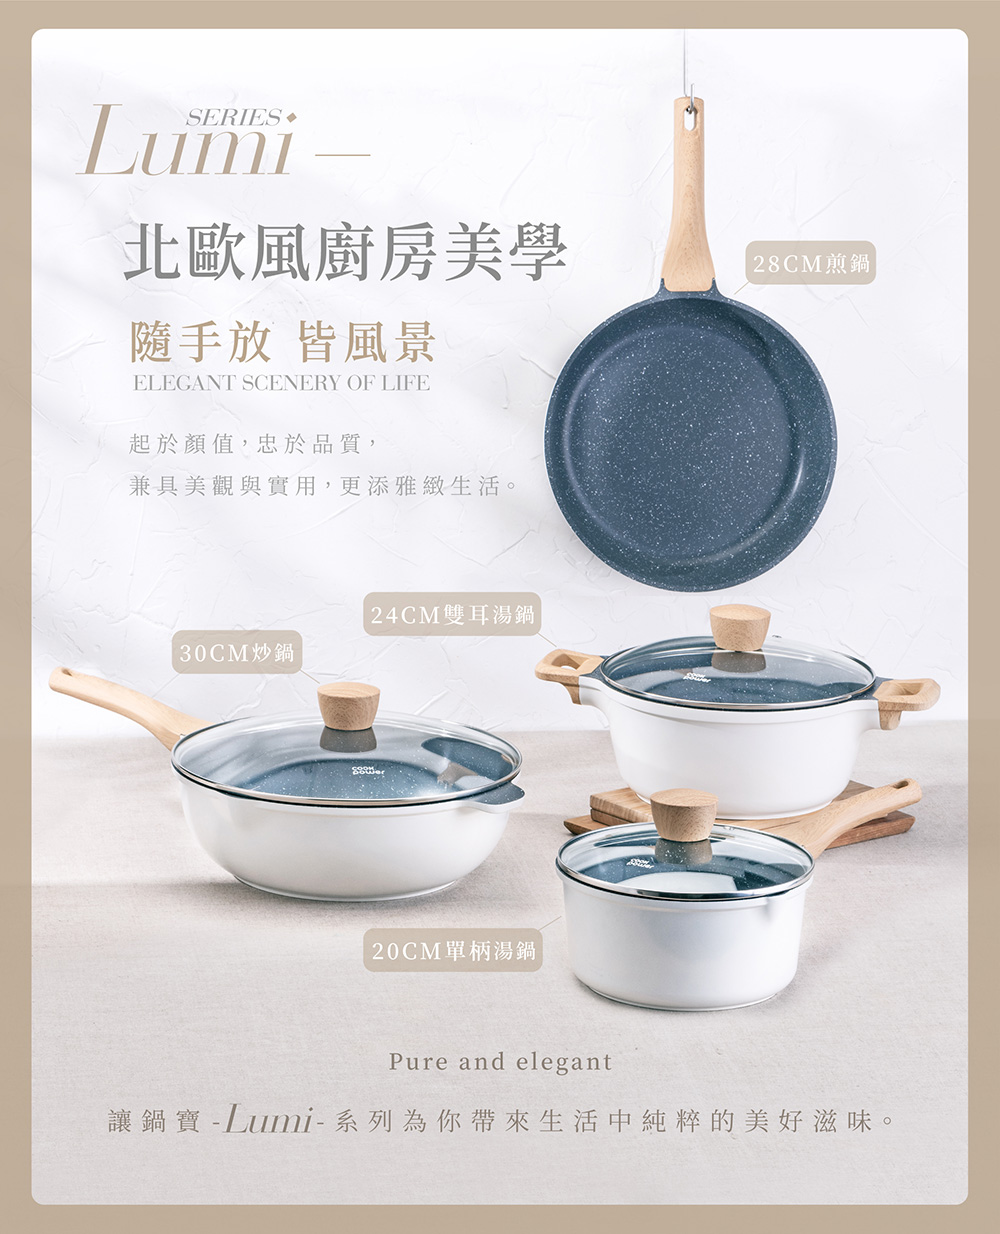 讓鍋寶 Lumi系列為你帶來生活中純粹的美好滋味。